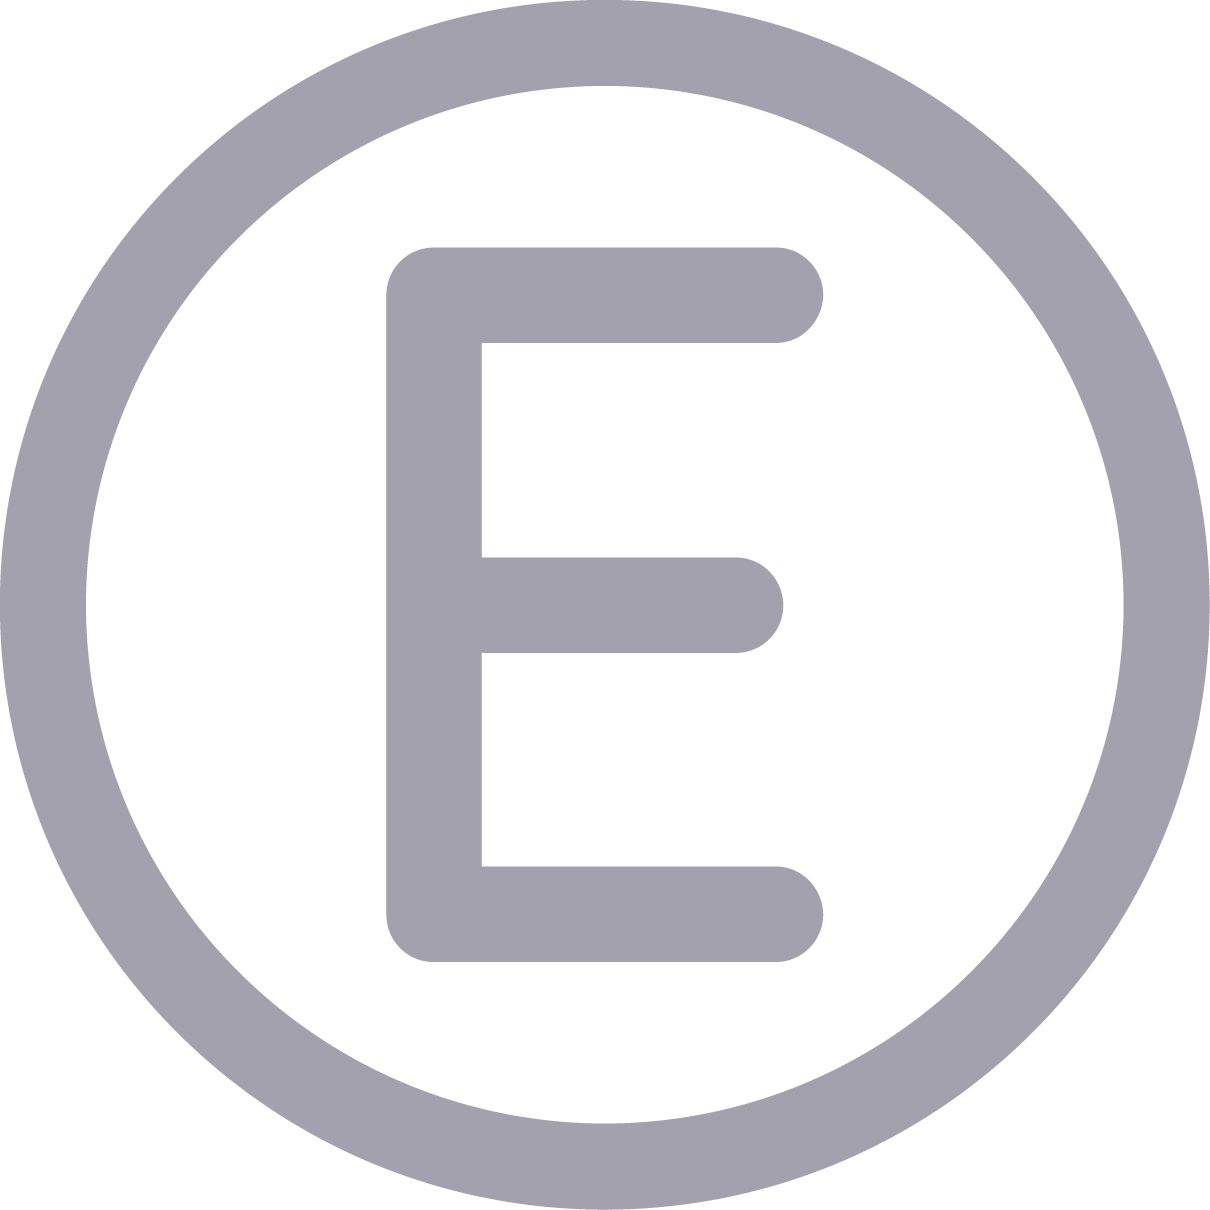 E symbol basic